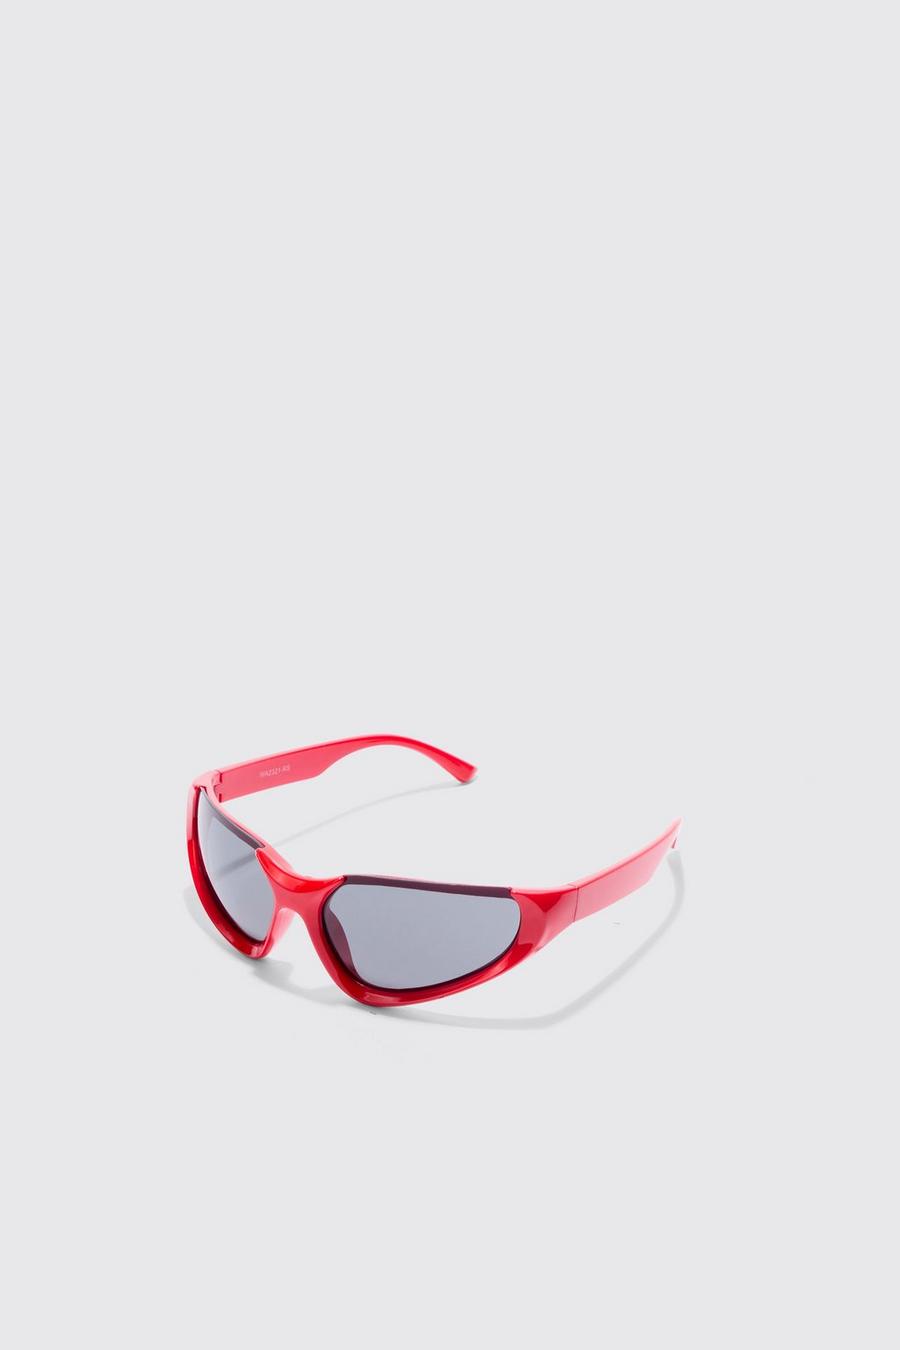 Gafas de sol estilo nadador sin montura, Red